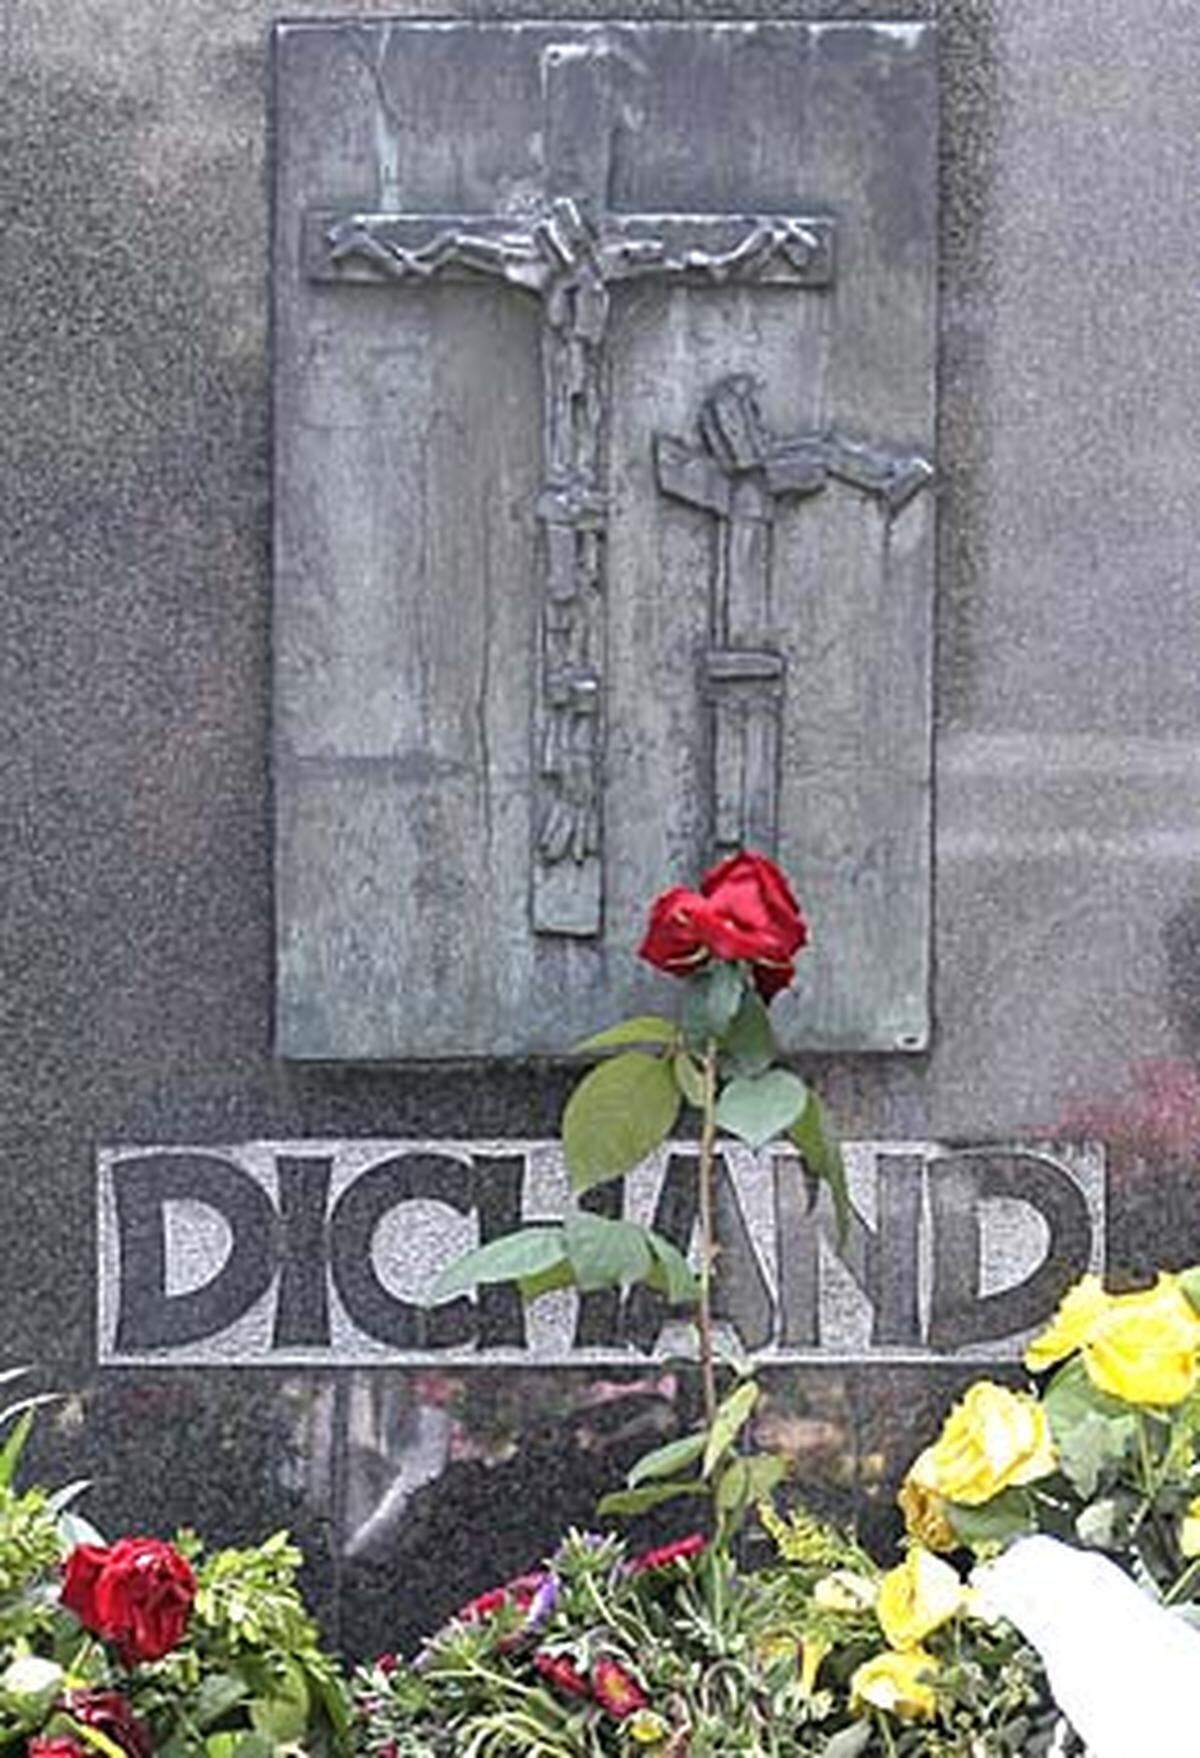 Der mächtige Herr der "Kronen Zeitung", Hans Dichand, ist am Samstag mit einer Seelenmesse im Wiener Stephandsdom öffentlich verabschiedet worden. Die Beisetzung des 89-Jährigen erfolgte dem Vernehmen nach bereits am Freitag. Dichand wurde im engsten Familienkreis auf dem Grinzinger Friedhof beigesetzt.